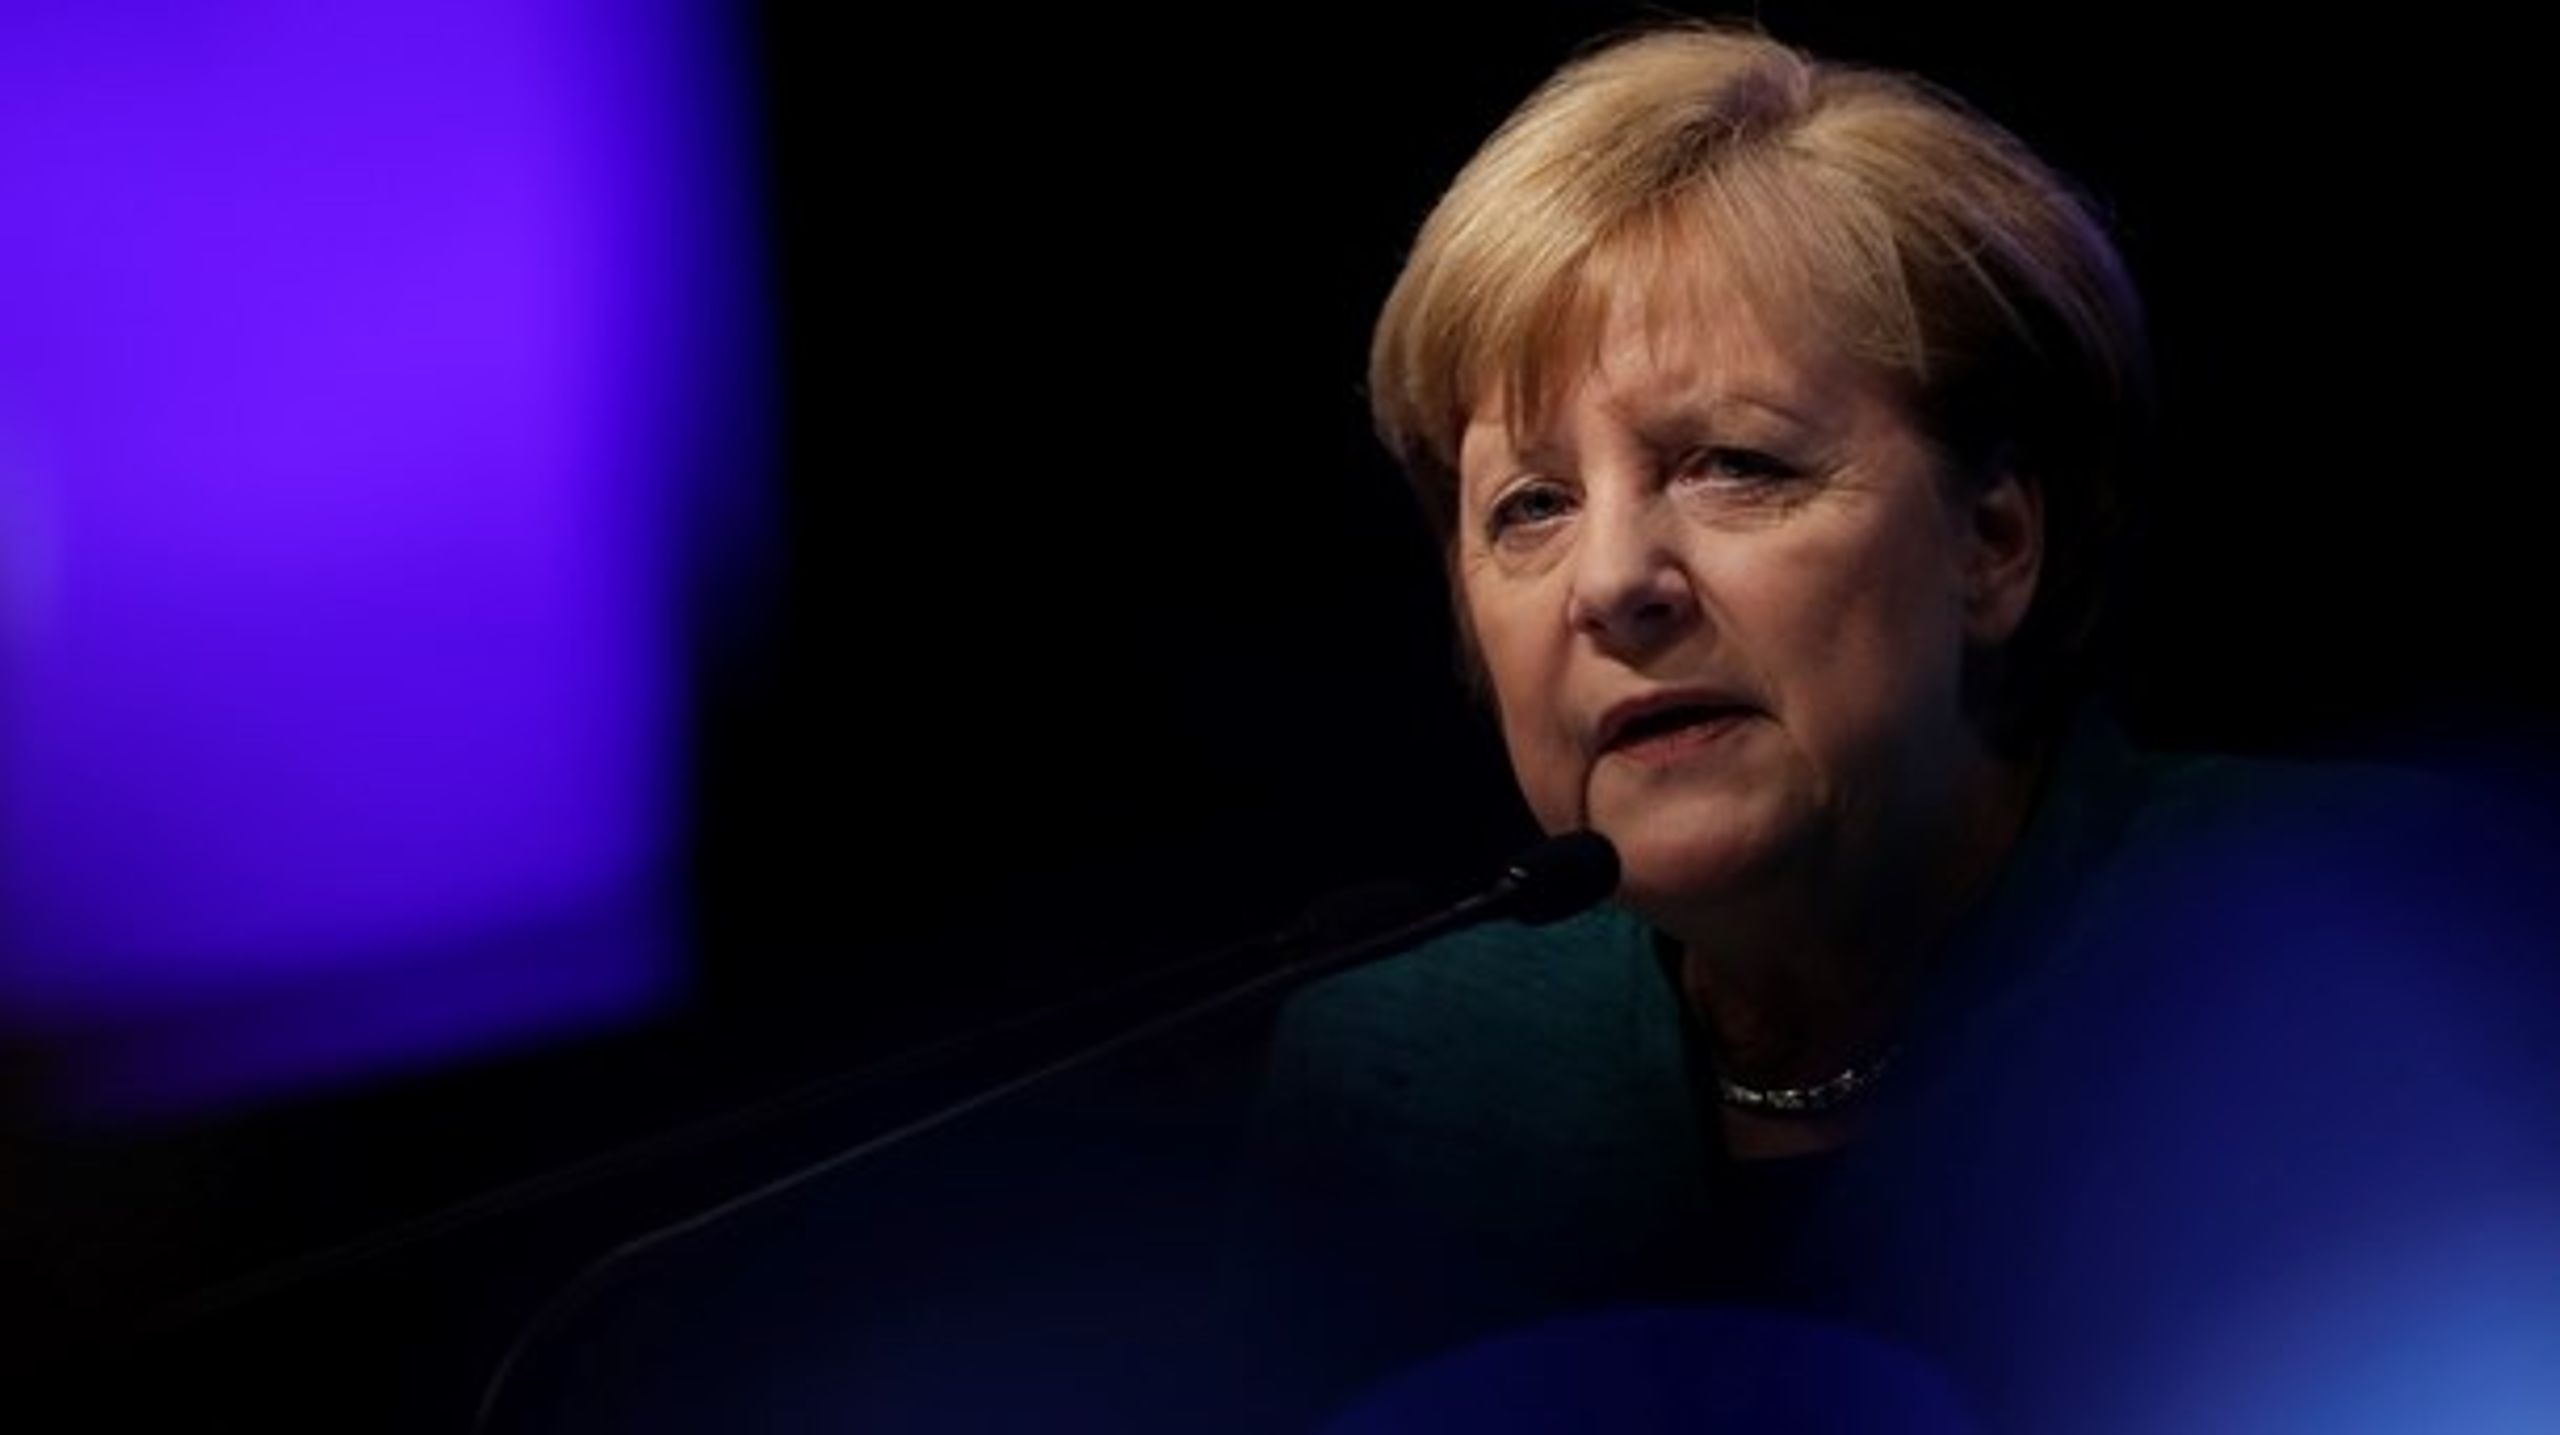 <b>DIE FRAU</b>: Angela Merkel er en skygge af sig selv, skriver David Trads.